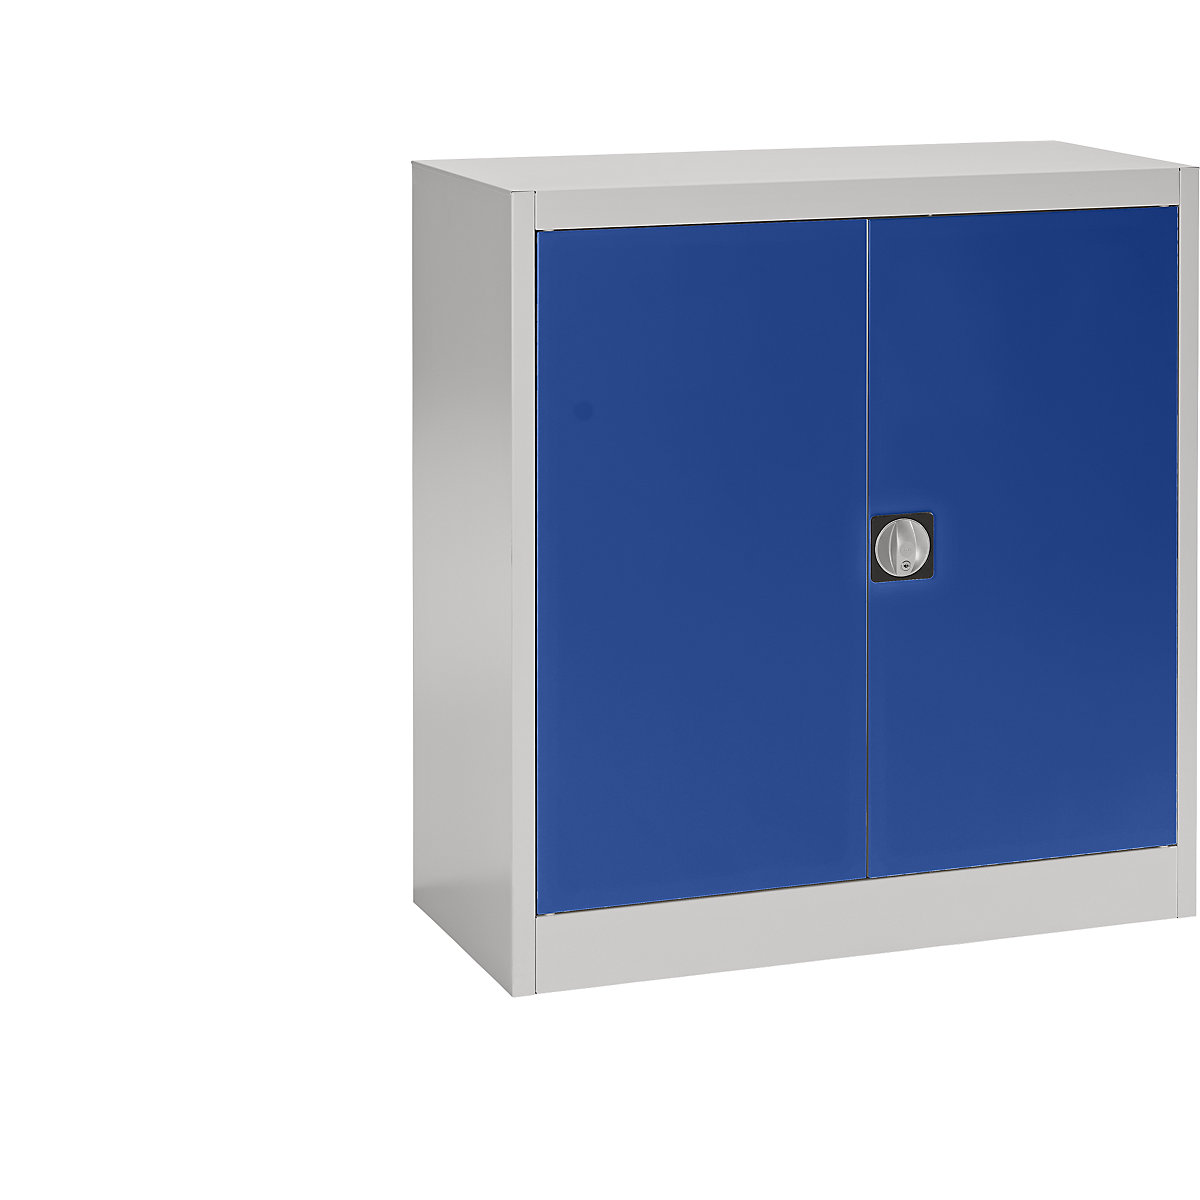 Čelični ormar s krilnim vratima – mauser, 2 police, visina 1016 mm, u svijetlosivoj / ultramarin plavoj boji-8